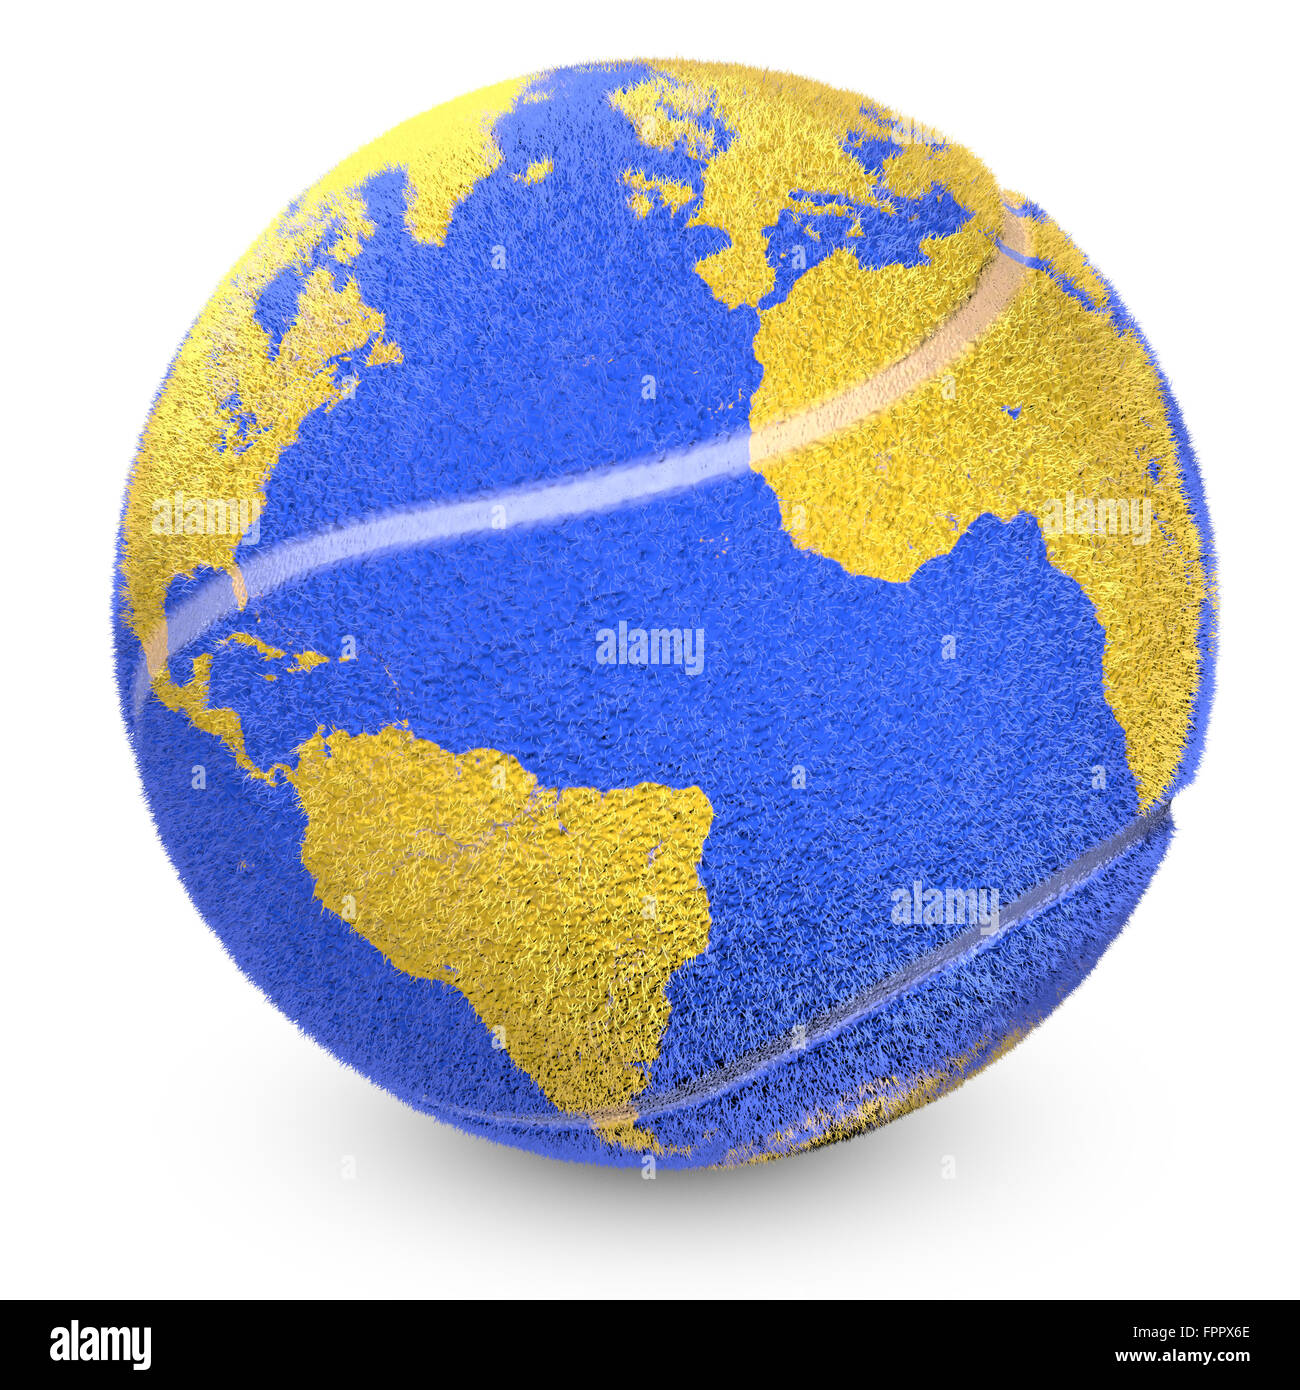 Concept de balle de tennis avec une impression de monde qui affiche des nations unies. Banque D'Images